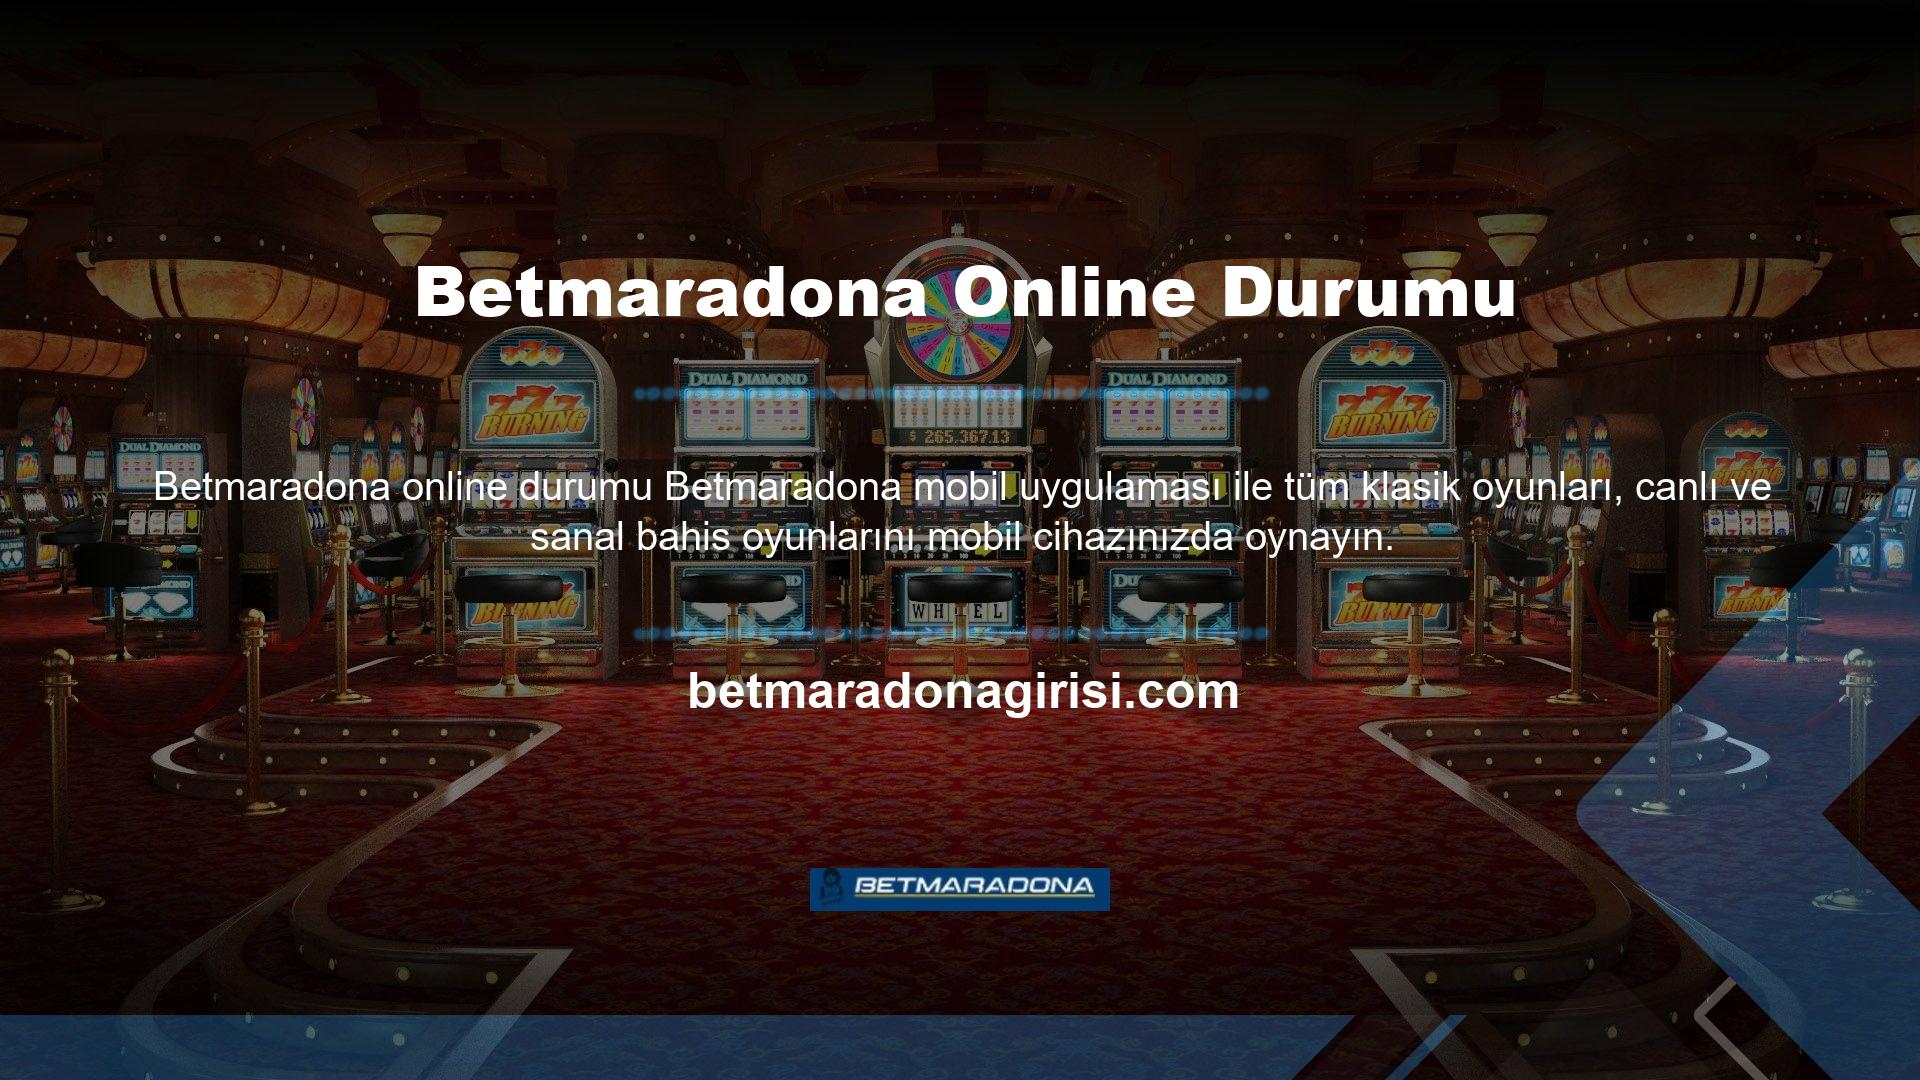 betmaradona Ne Tür Web Sitedir